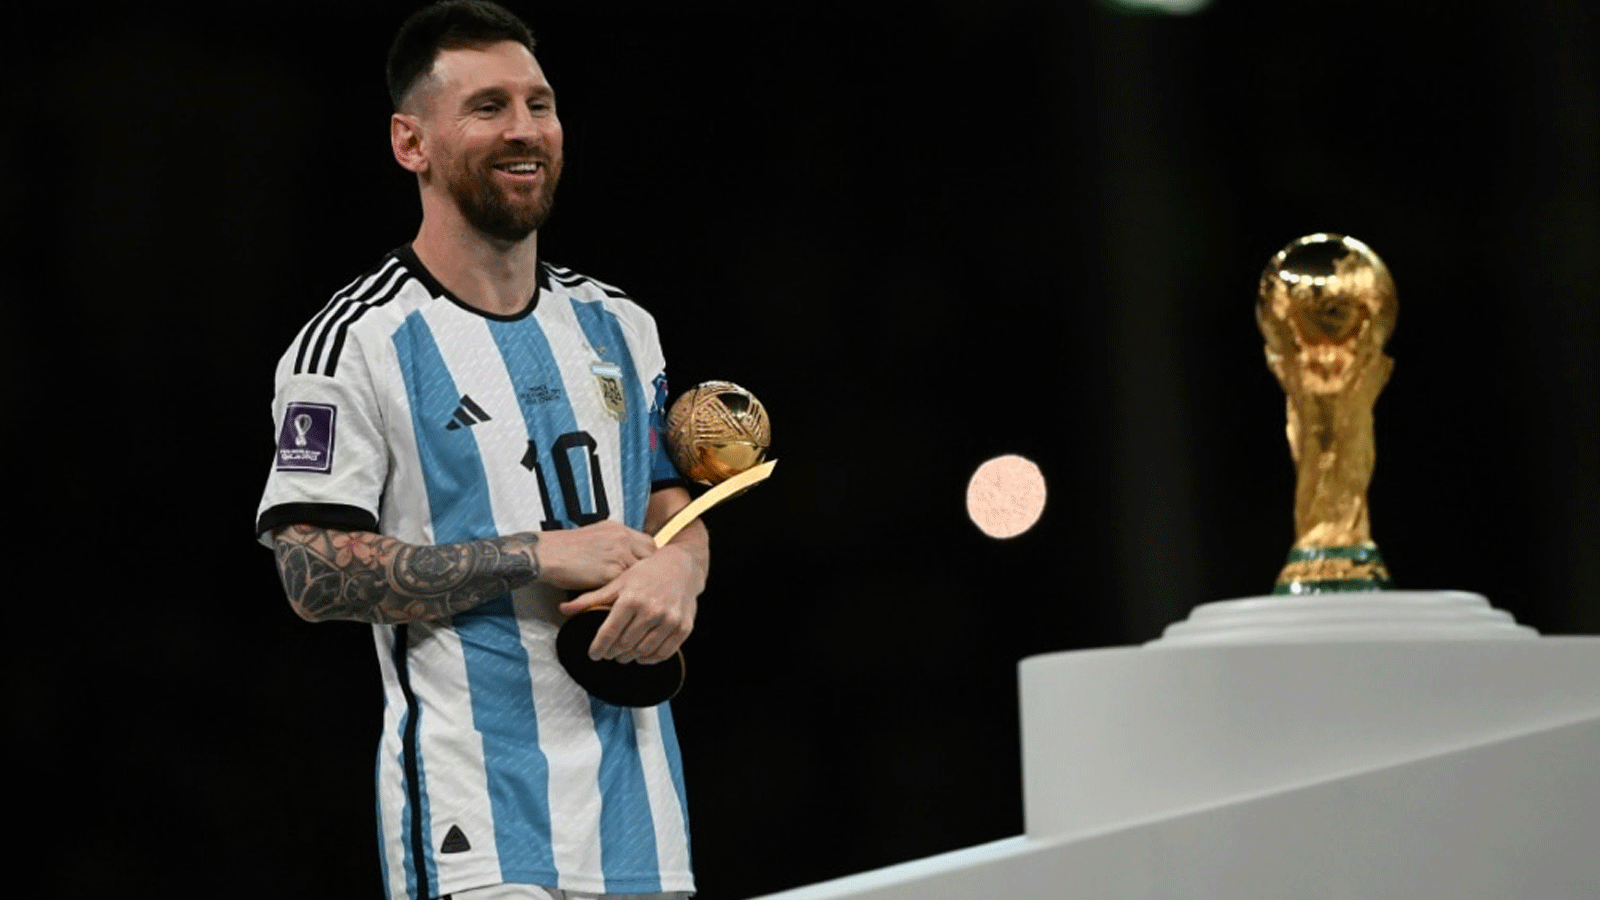 ليونيل ميسي يقف أمام كأس العالم FIFA بعد فوز الأرجنتين على فرنسا بركلات الترجيح في النهائي